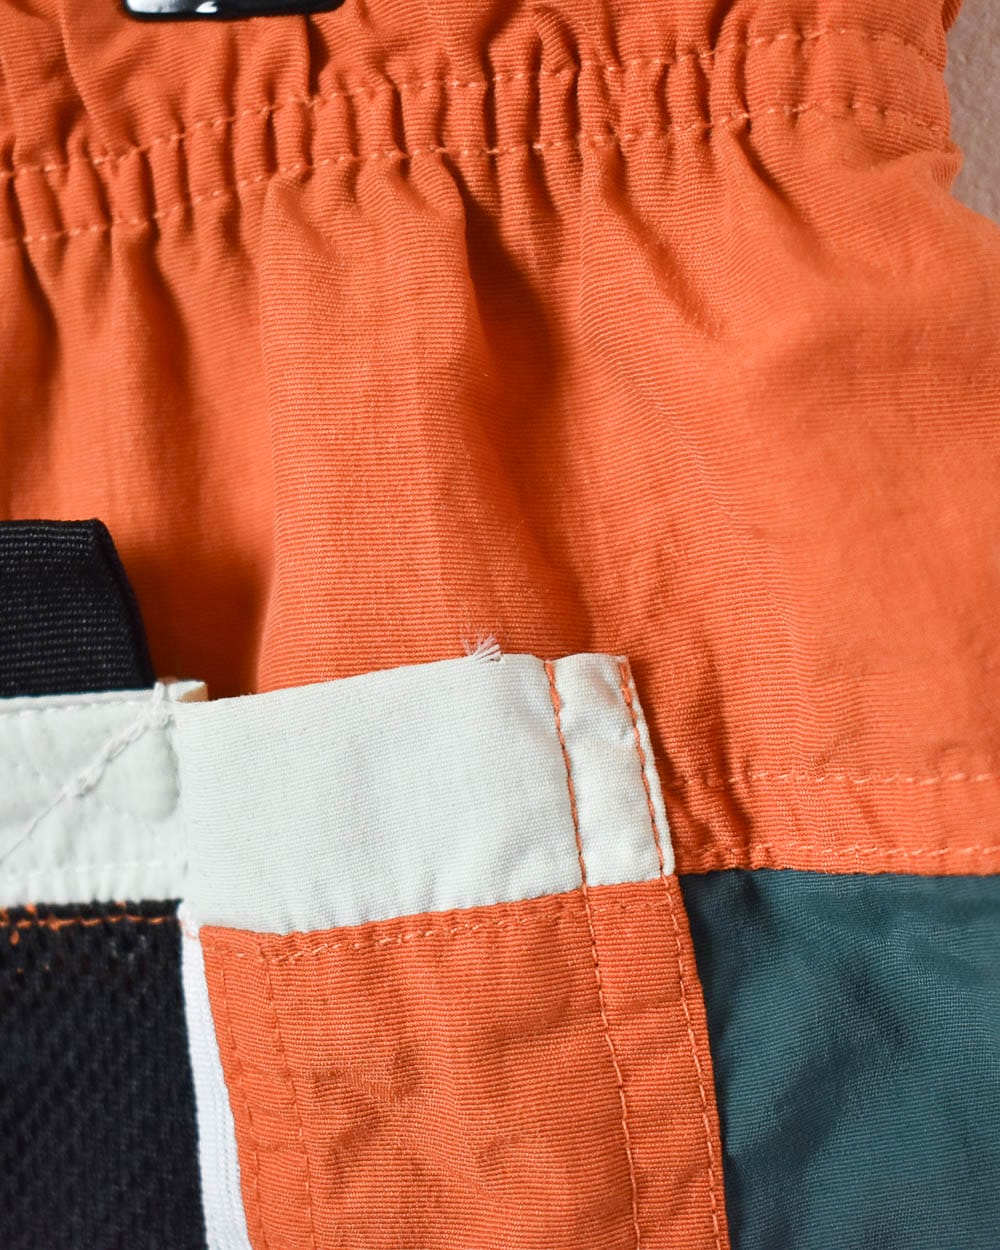 Orange Fila Mesh Shorts - Medium